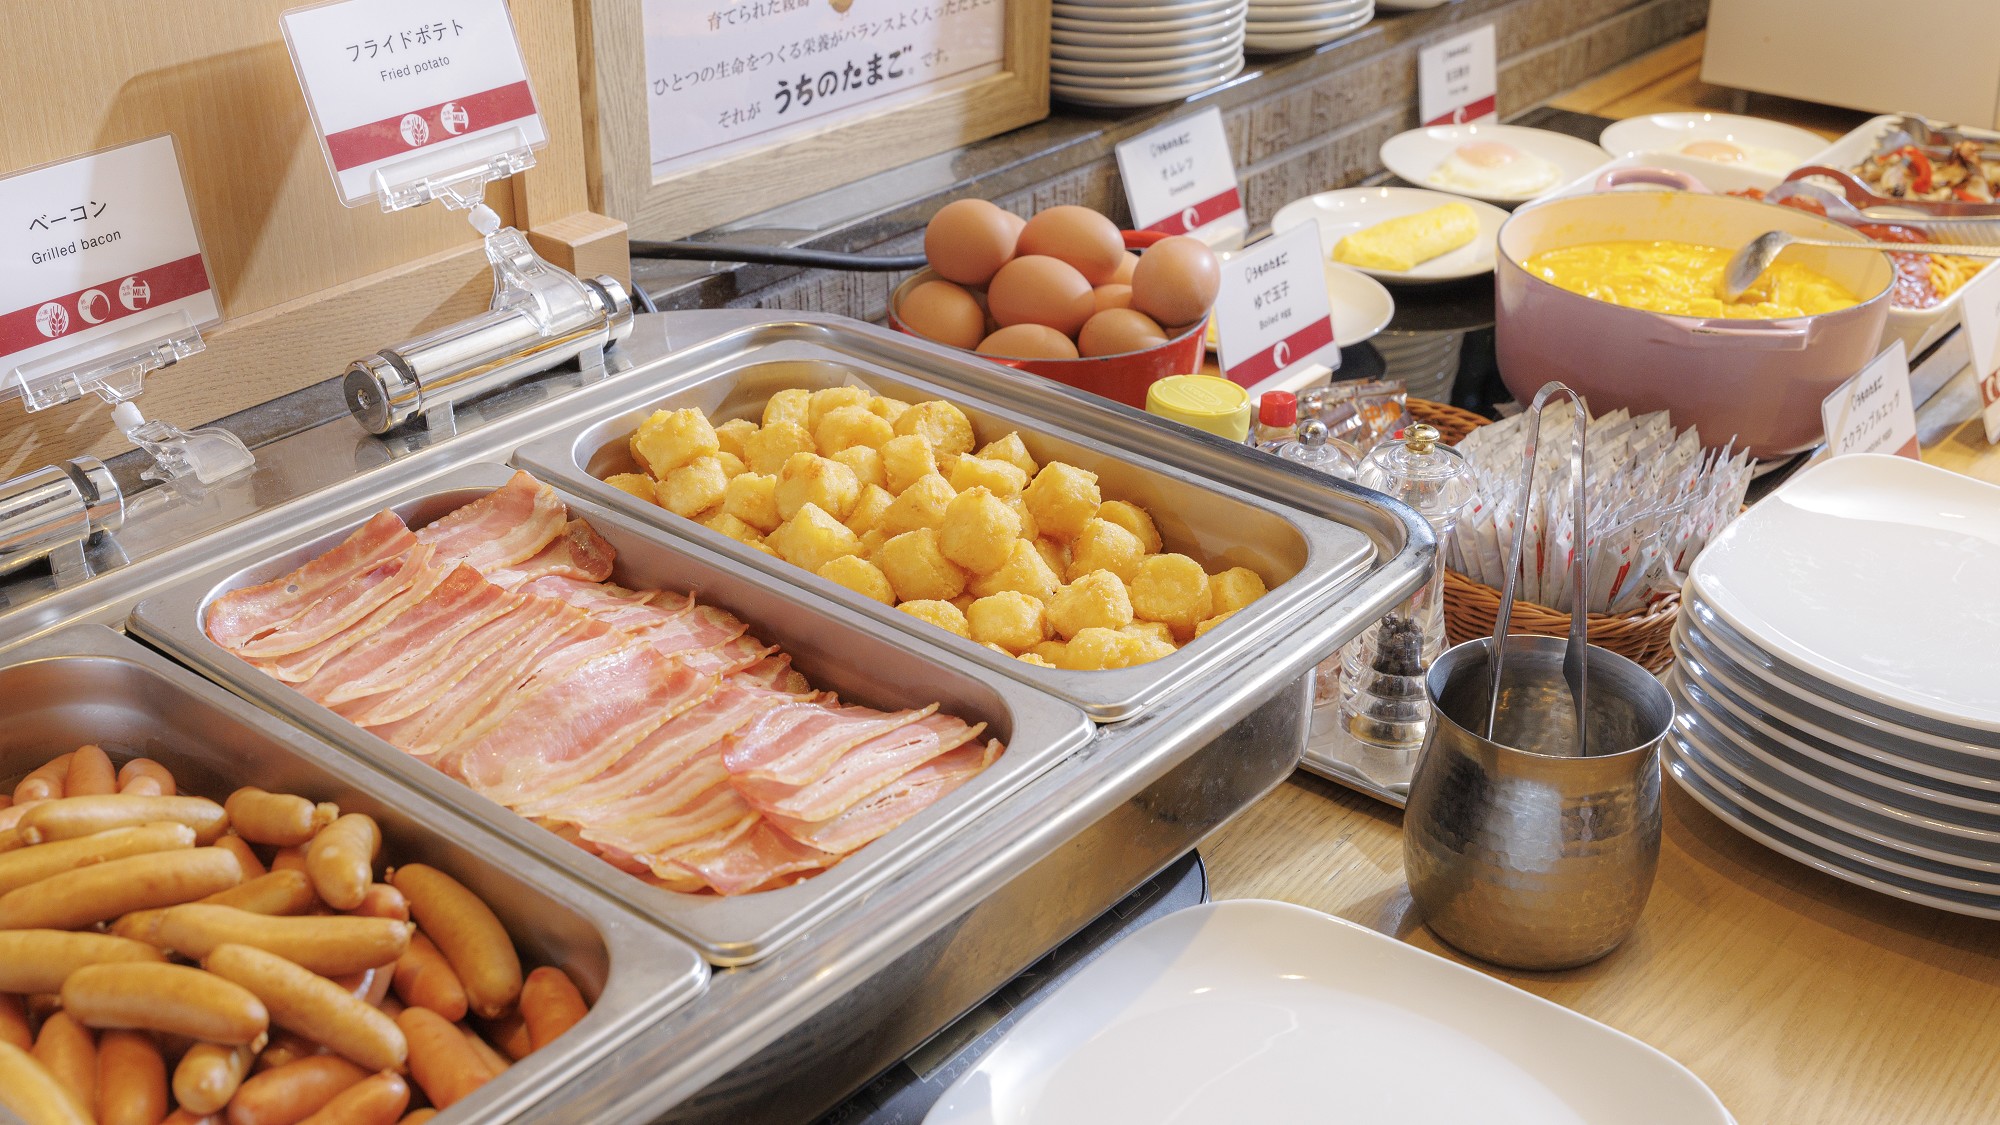 ご朝食は、「心を豊かに、たのしく」をテーマに、食の宝庫九州の食材を取り入れた和食や洋食をご用意